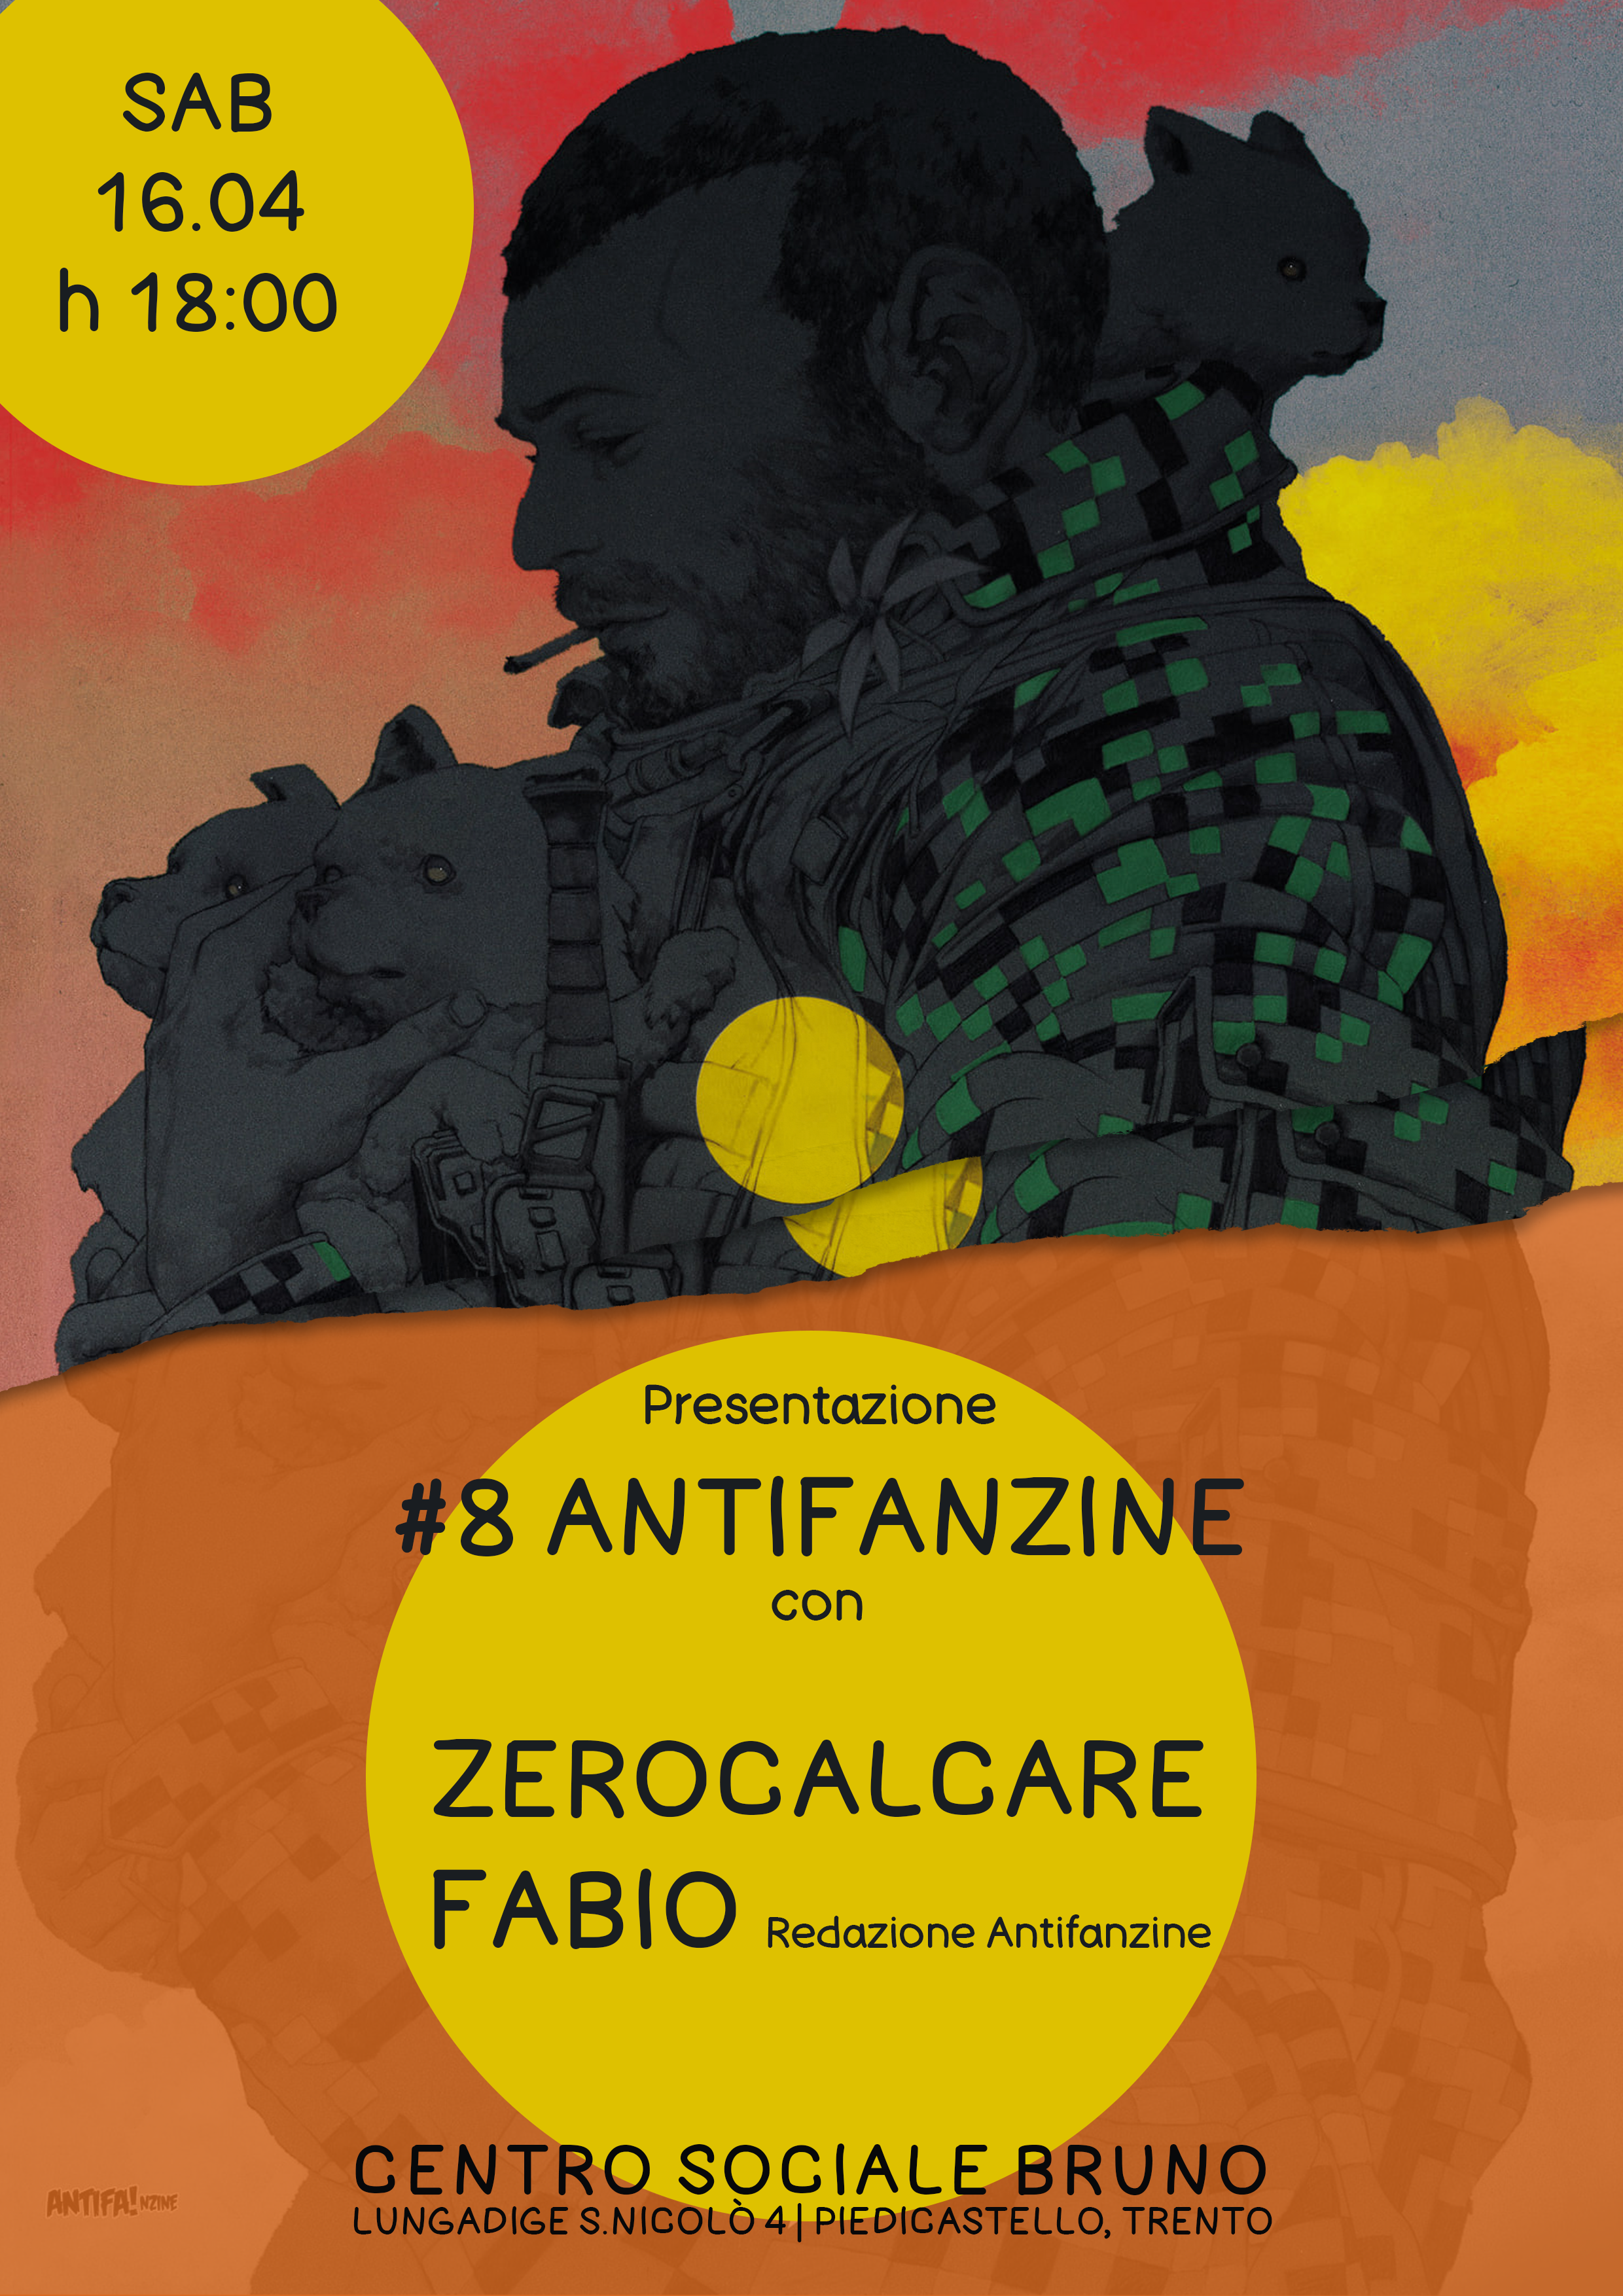 Presentazione #8 Antifa!nzine con Zerocalcare